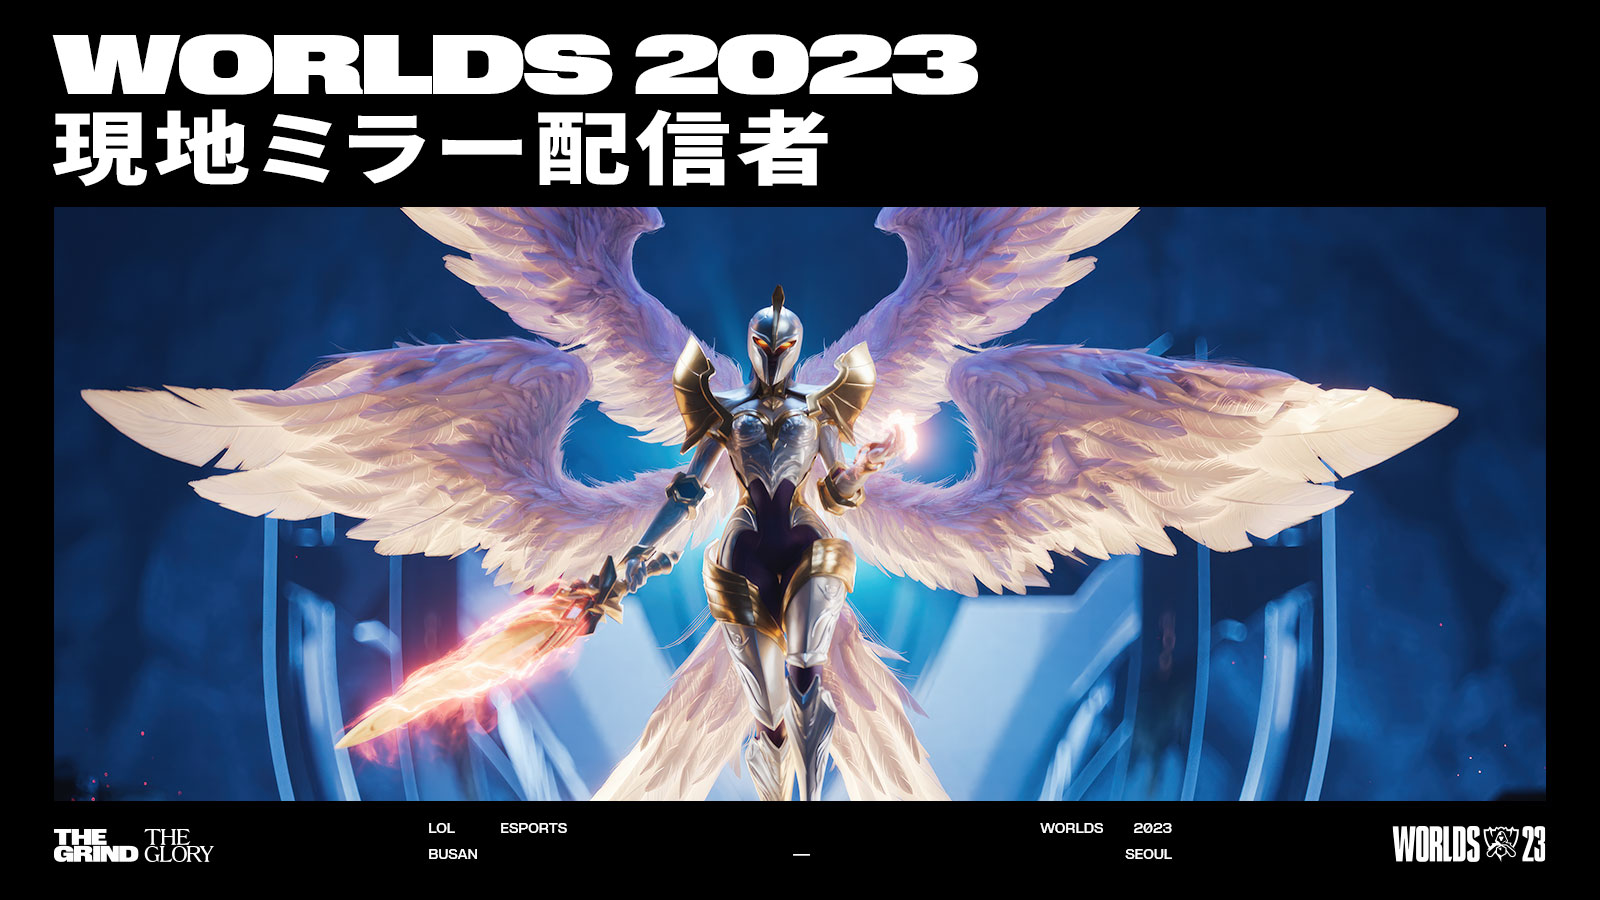 出演情報 – k4senが『League of Legends Worlds 2023 Finals ウォッチパーティー』に出演